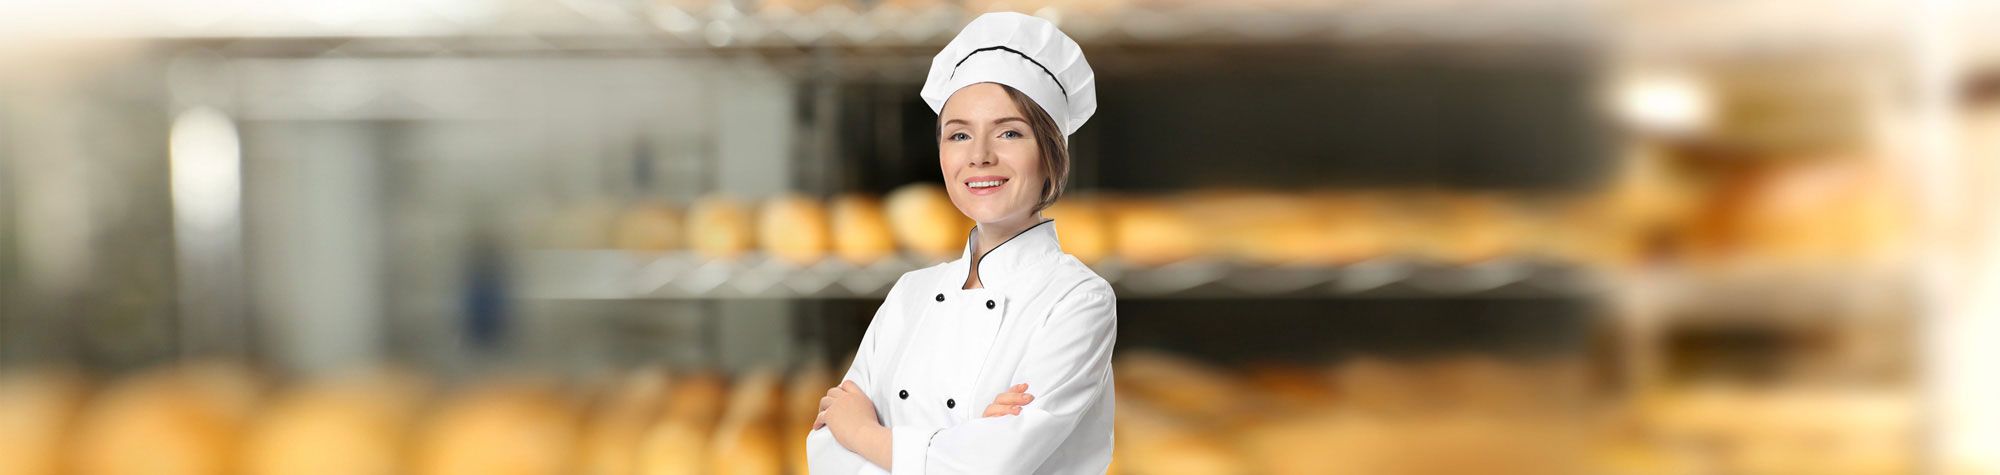 Mitarbeiterin in einer Bäckerei